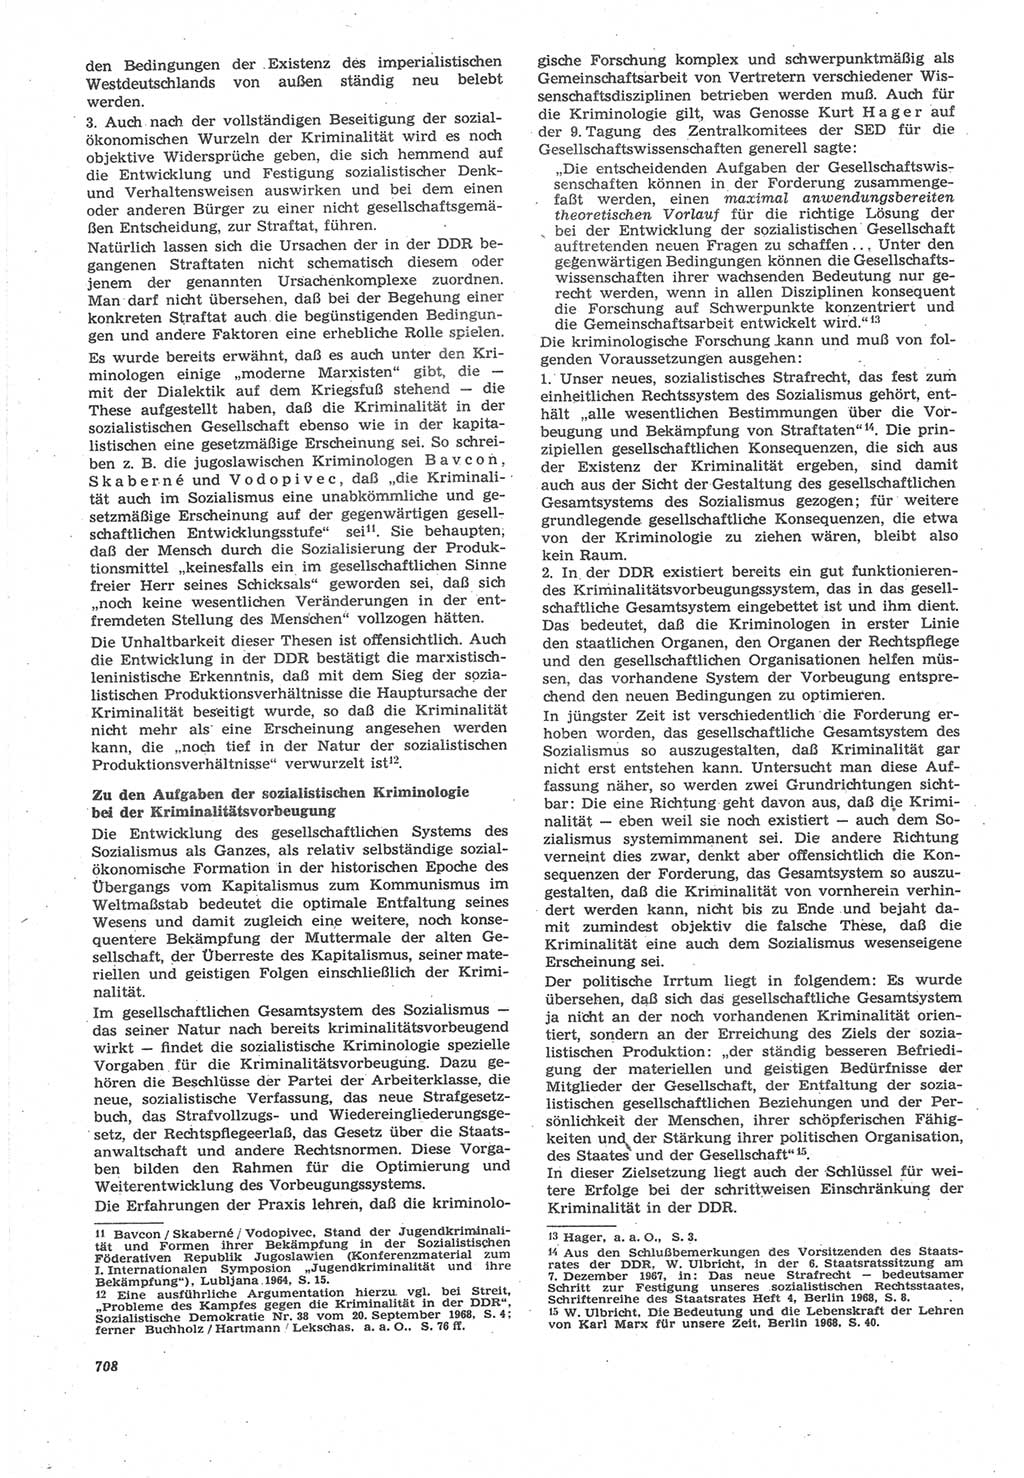 Neue Justiz (NJ), Zeitschrift für Recht und Rechtswissenschaft [Deutsche Demokratische Republik (DDR)], 22. Jahrgang 1968, Seite 708 (NJ DDR 1968, S. 708)